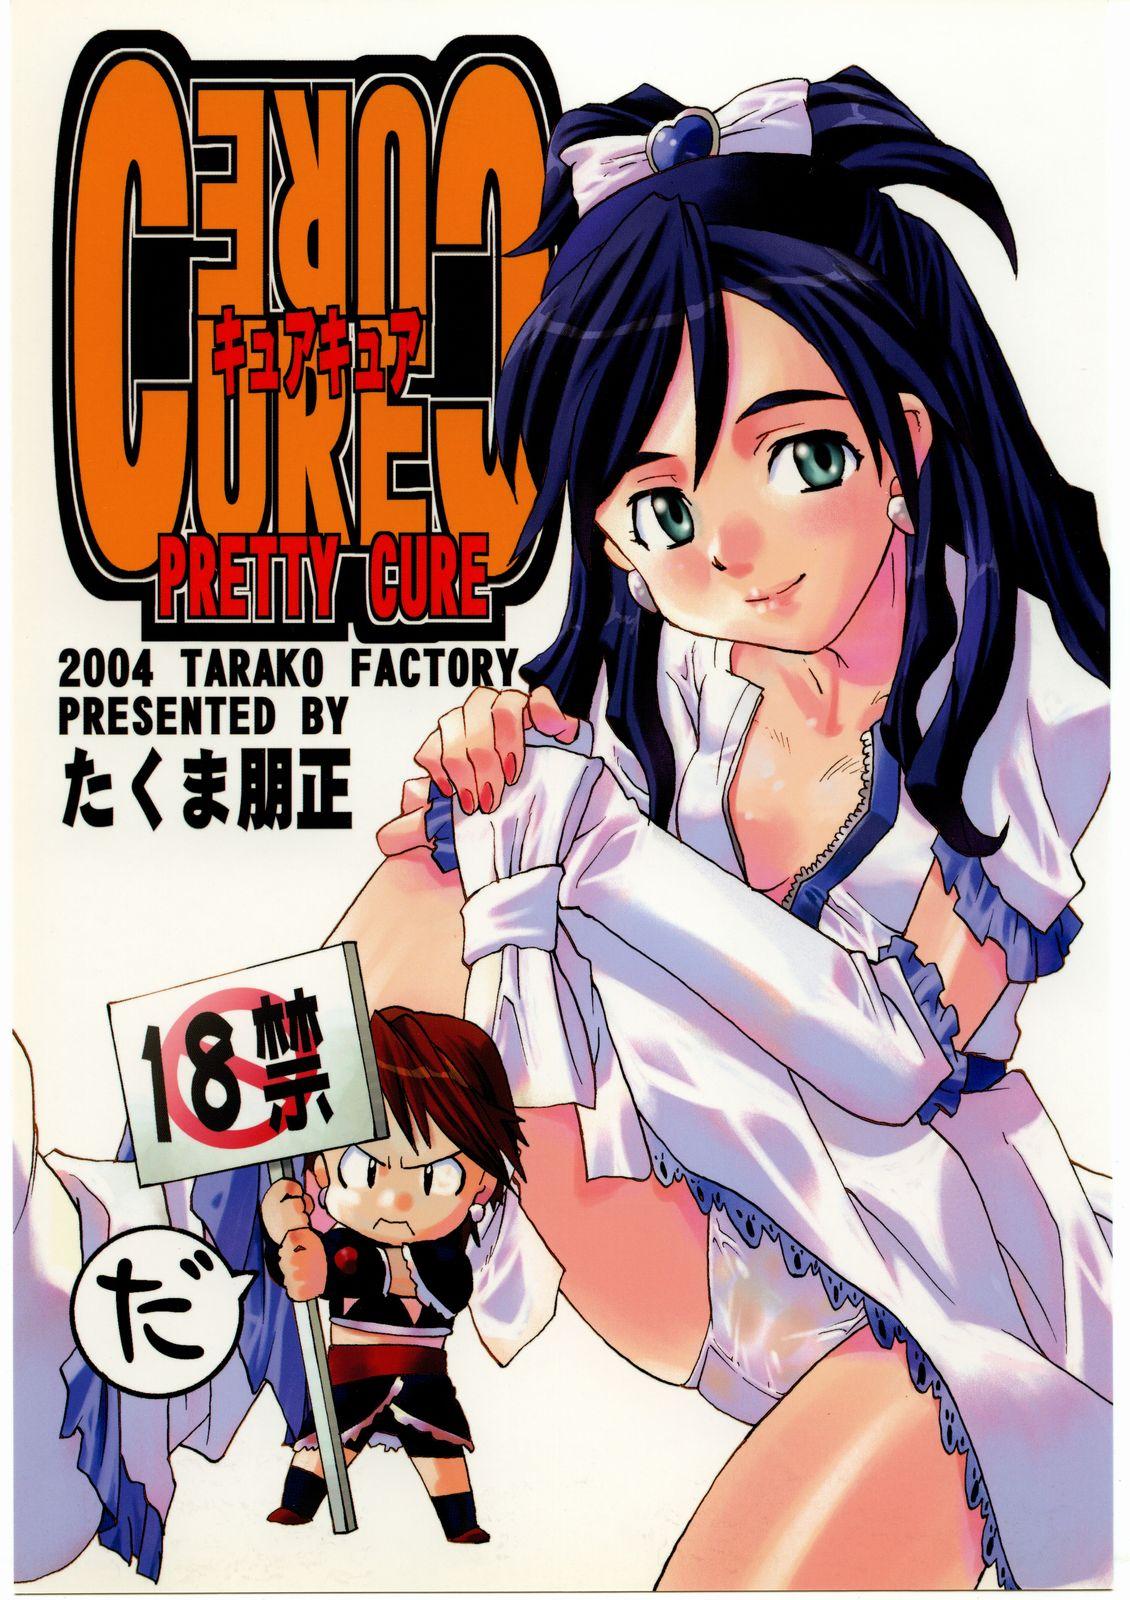 Monstercock Cure Cure - Futari wa pretty cure | futari wa precure Hand - Picture 1